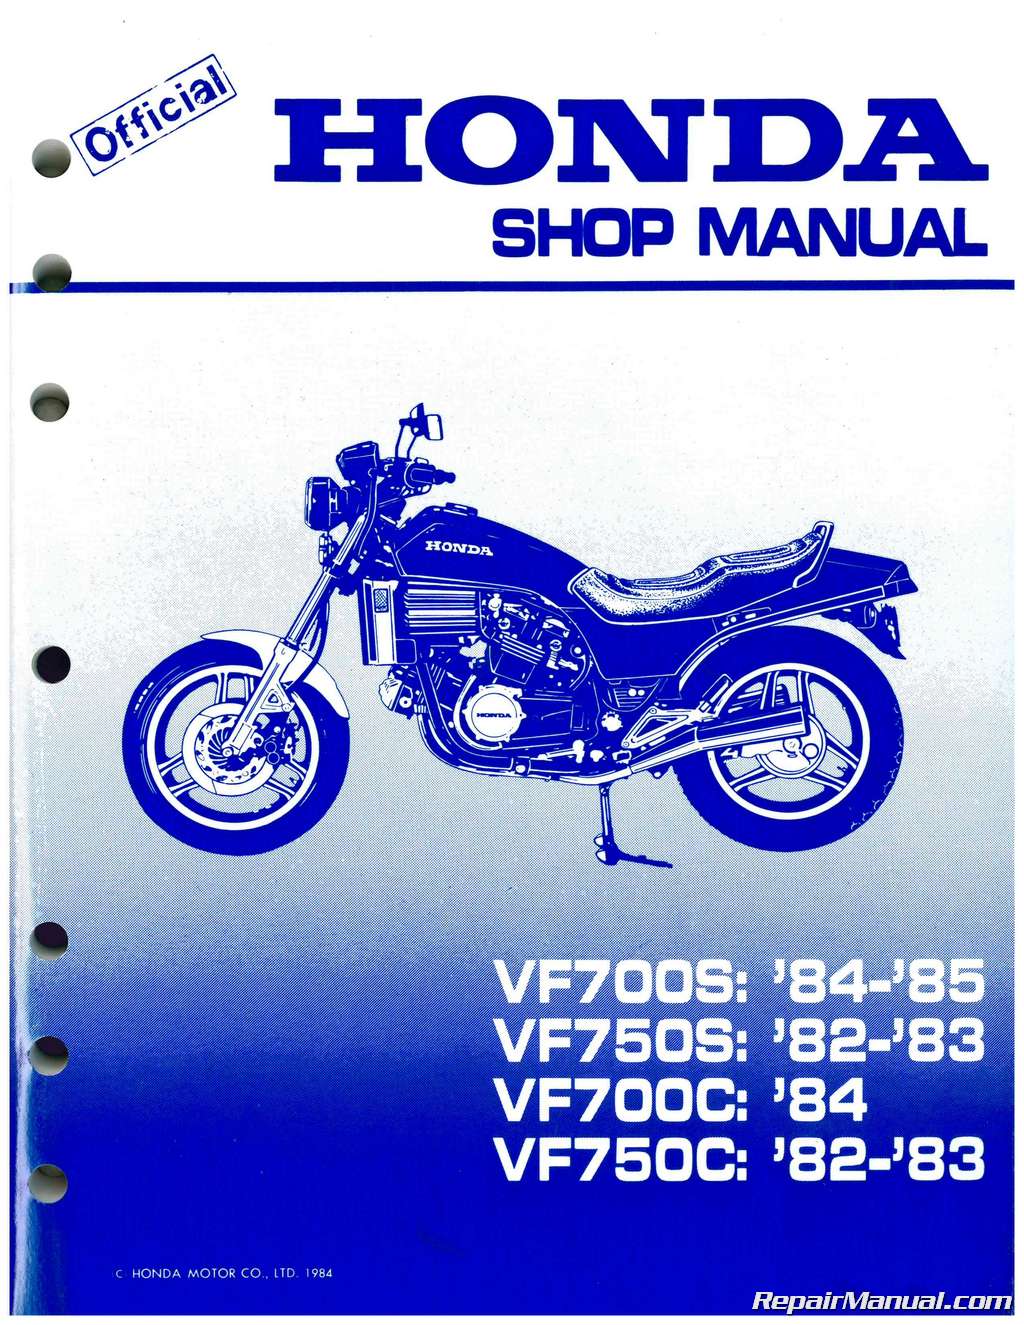 1999 Honda magna 750 repair manual #2